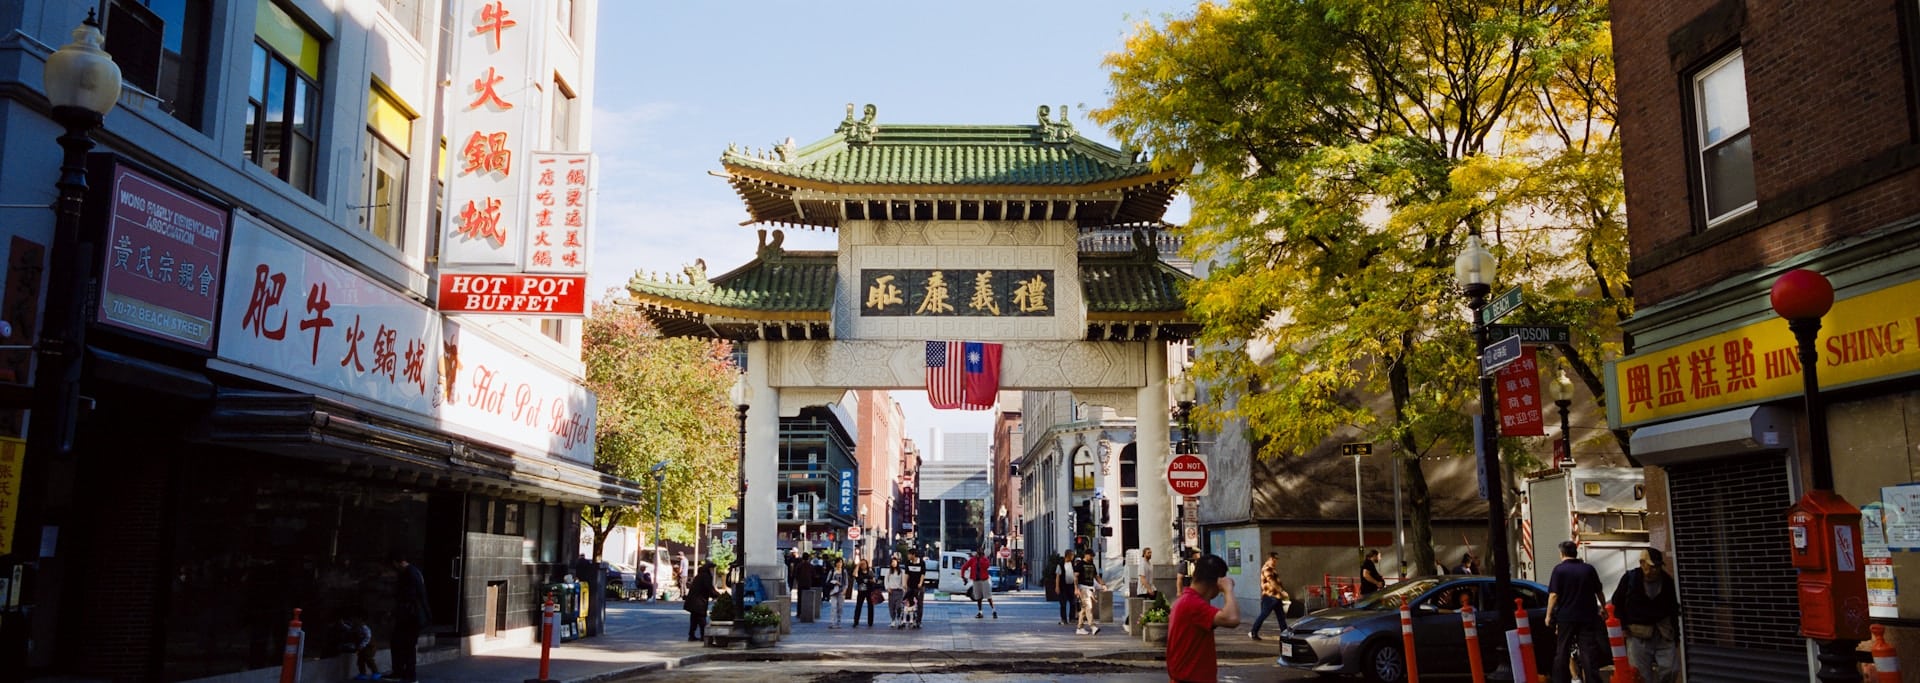 El barrio chino de Boston es uno de los mejores distritos turísticos de la ciudad